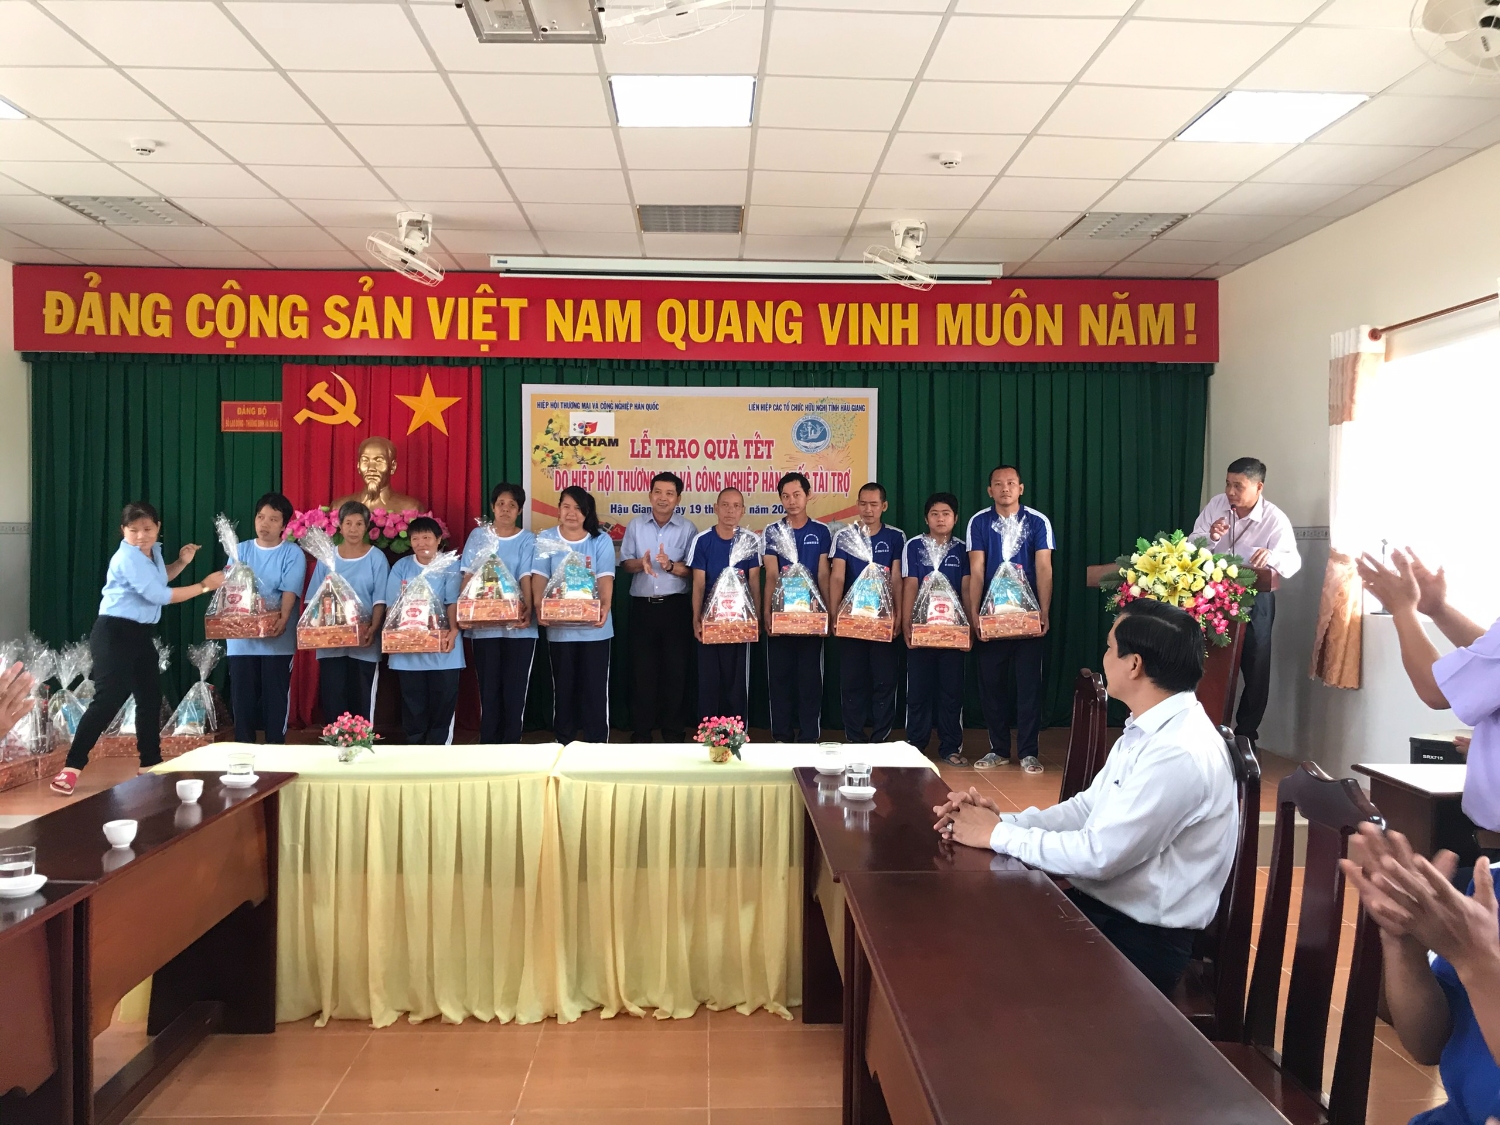 Ông Nguyễn Văn Nhân - Chủ tịch Liên hiệp Hậu Giang tặng quà cho các đối tượng bảo trợ xã hội trên địa bàn tỉnh.